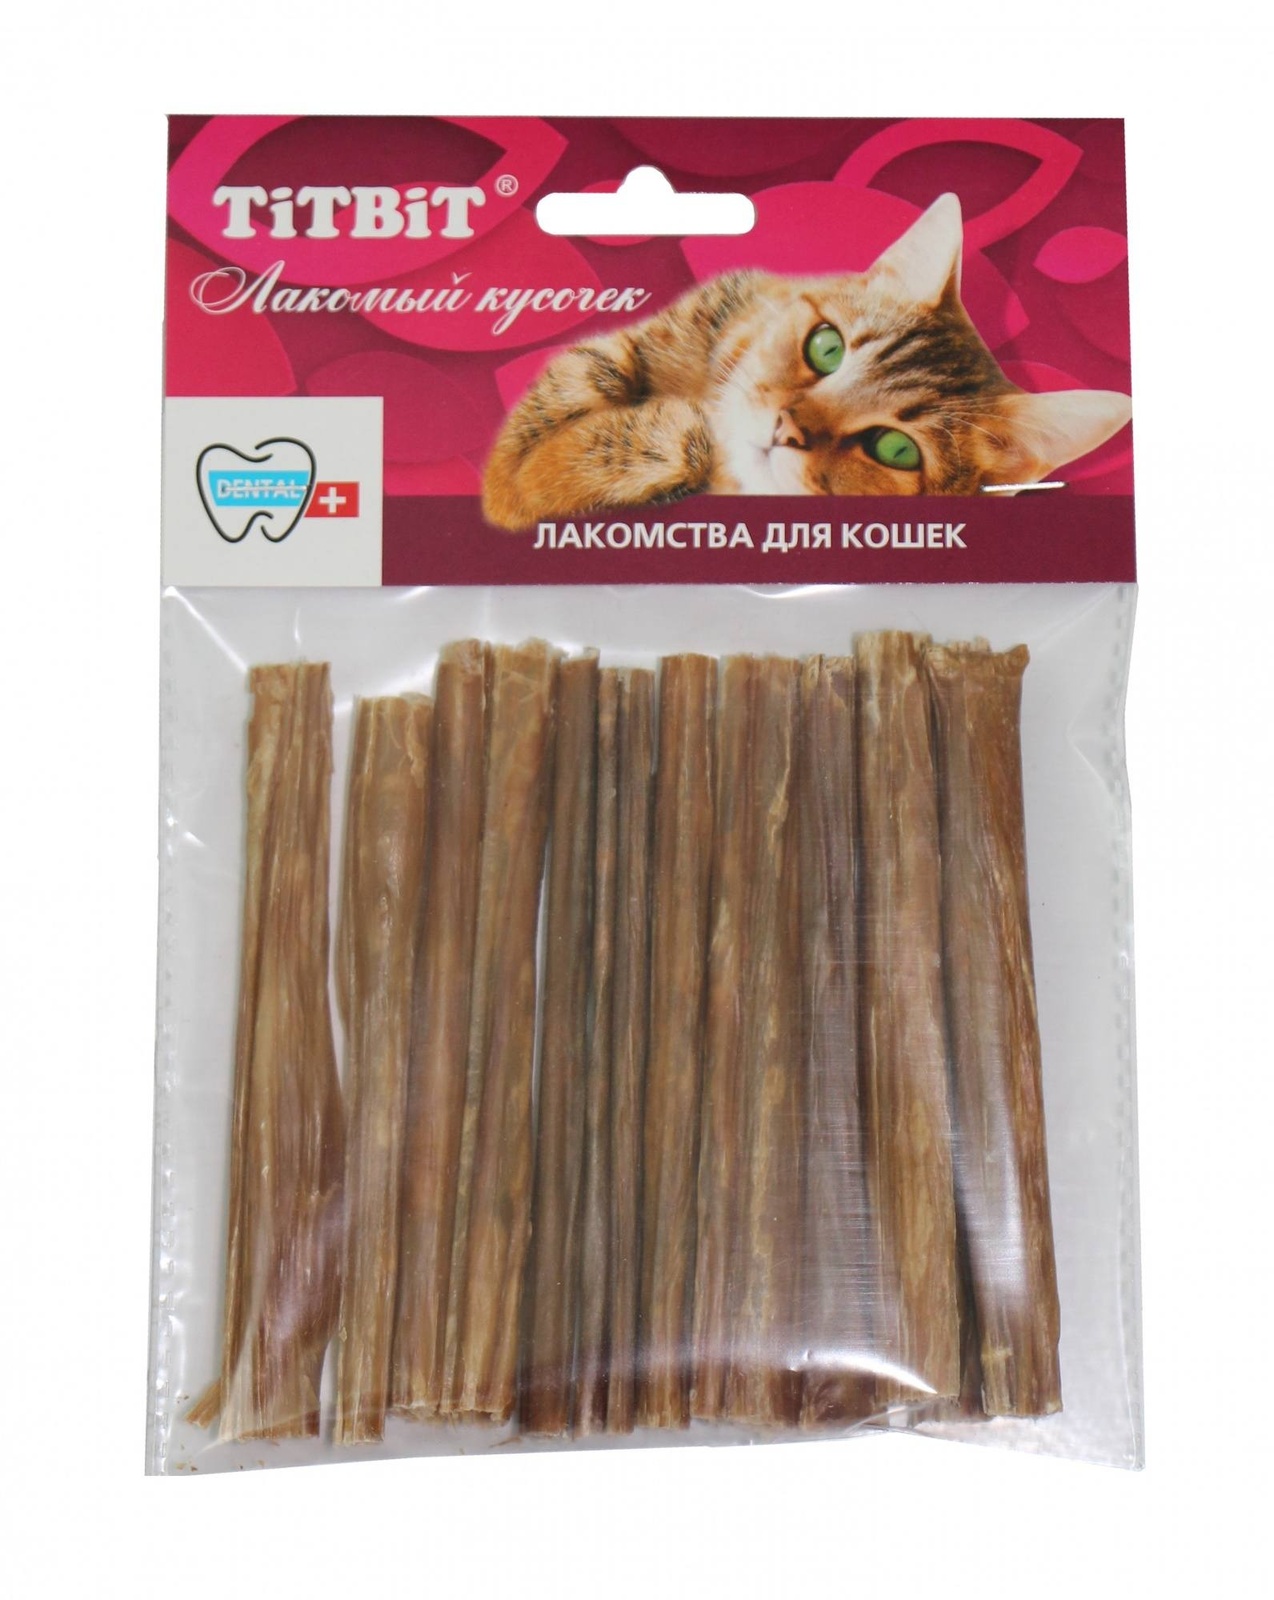 TiTBiT TiTBiT кишки говяжьи для кошек (32 г) titbit кишки говяжьи для кошек сушеные лакомства 20 г